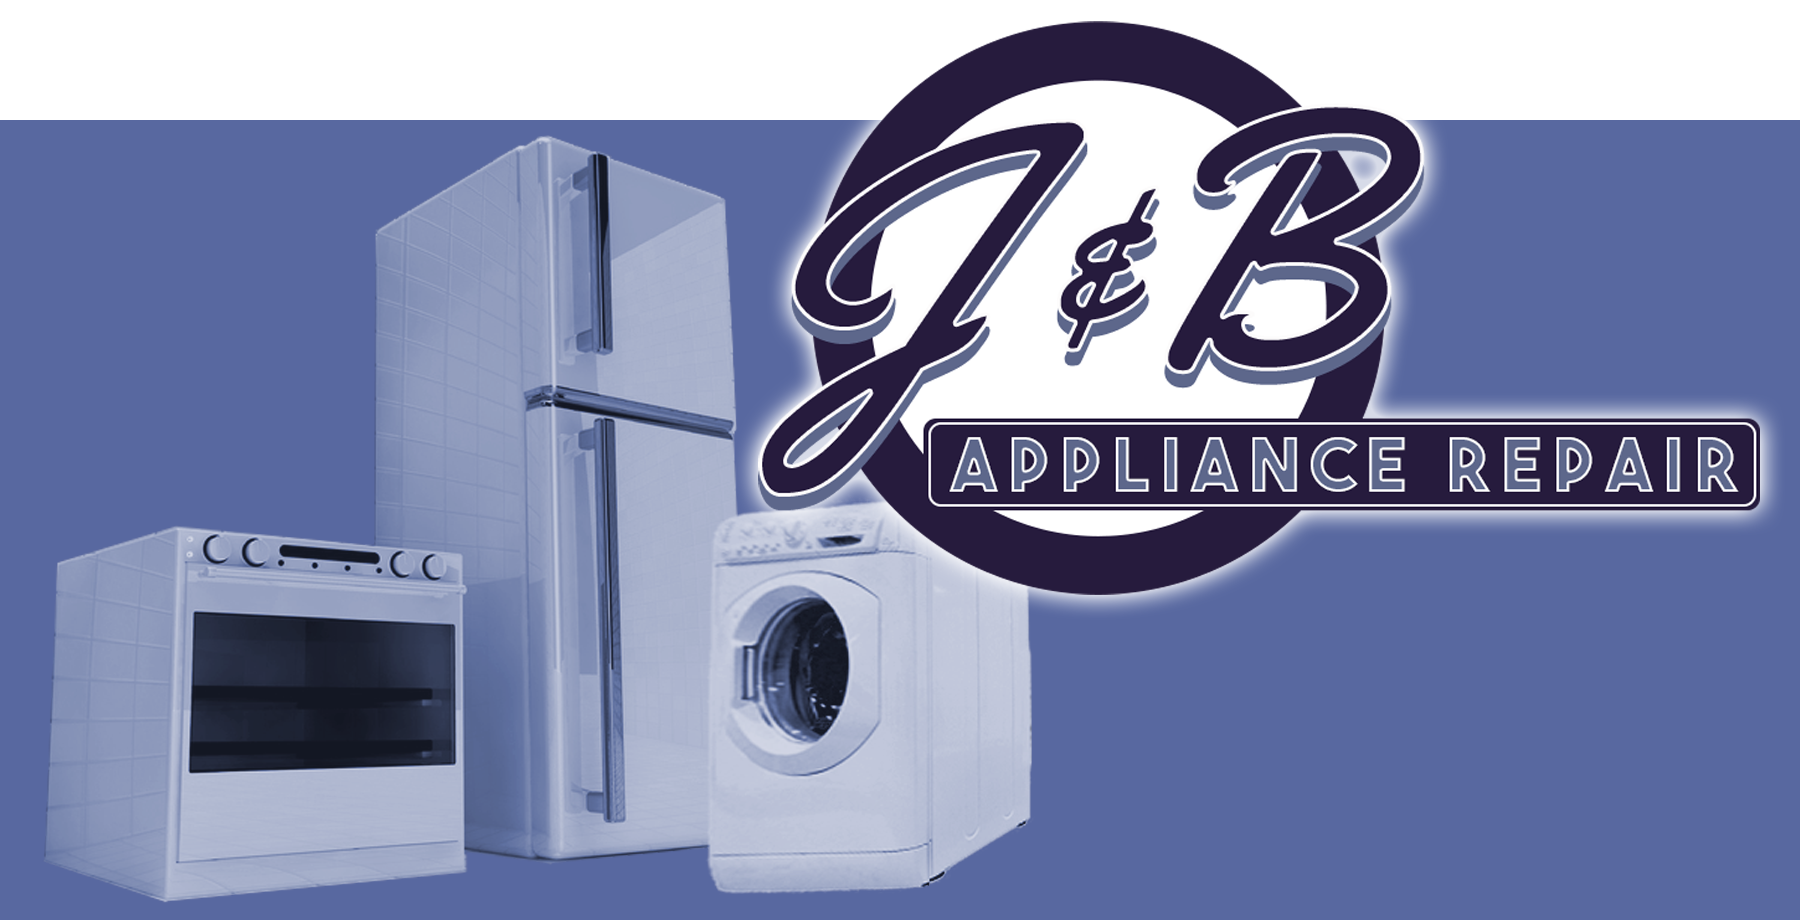 J&B Appliance Repair